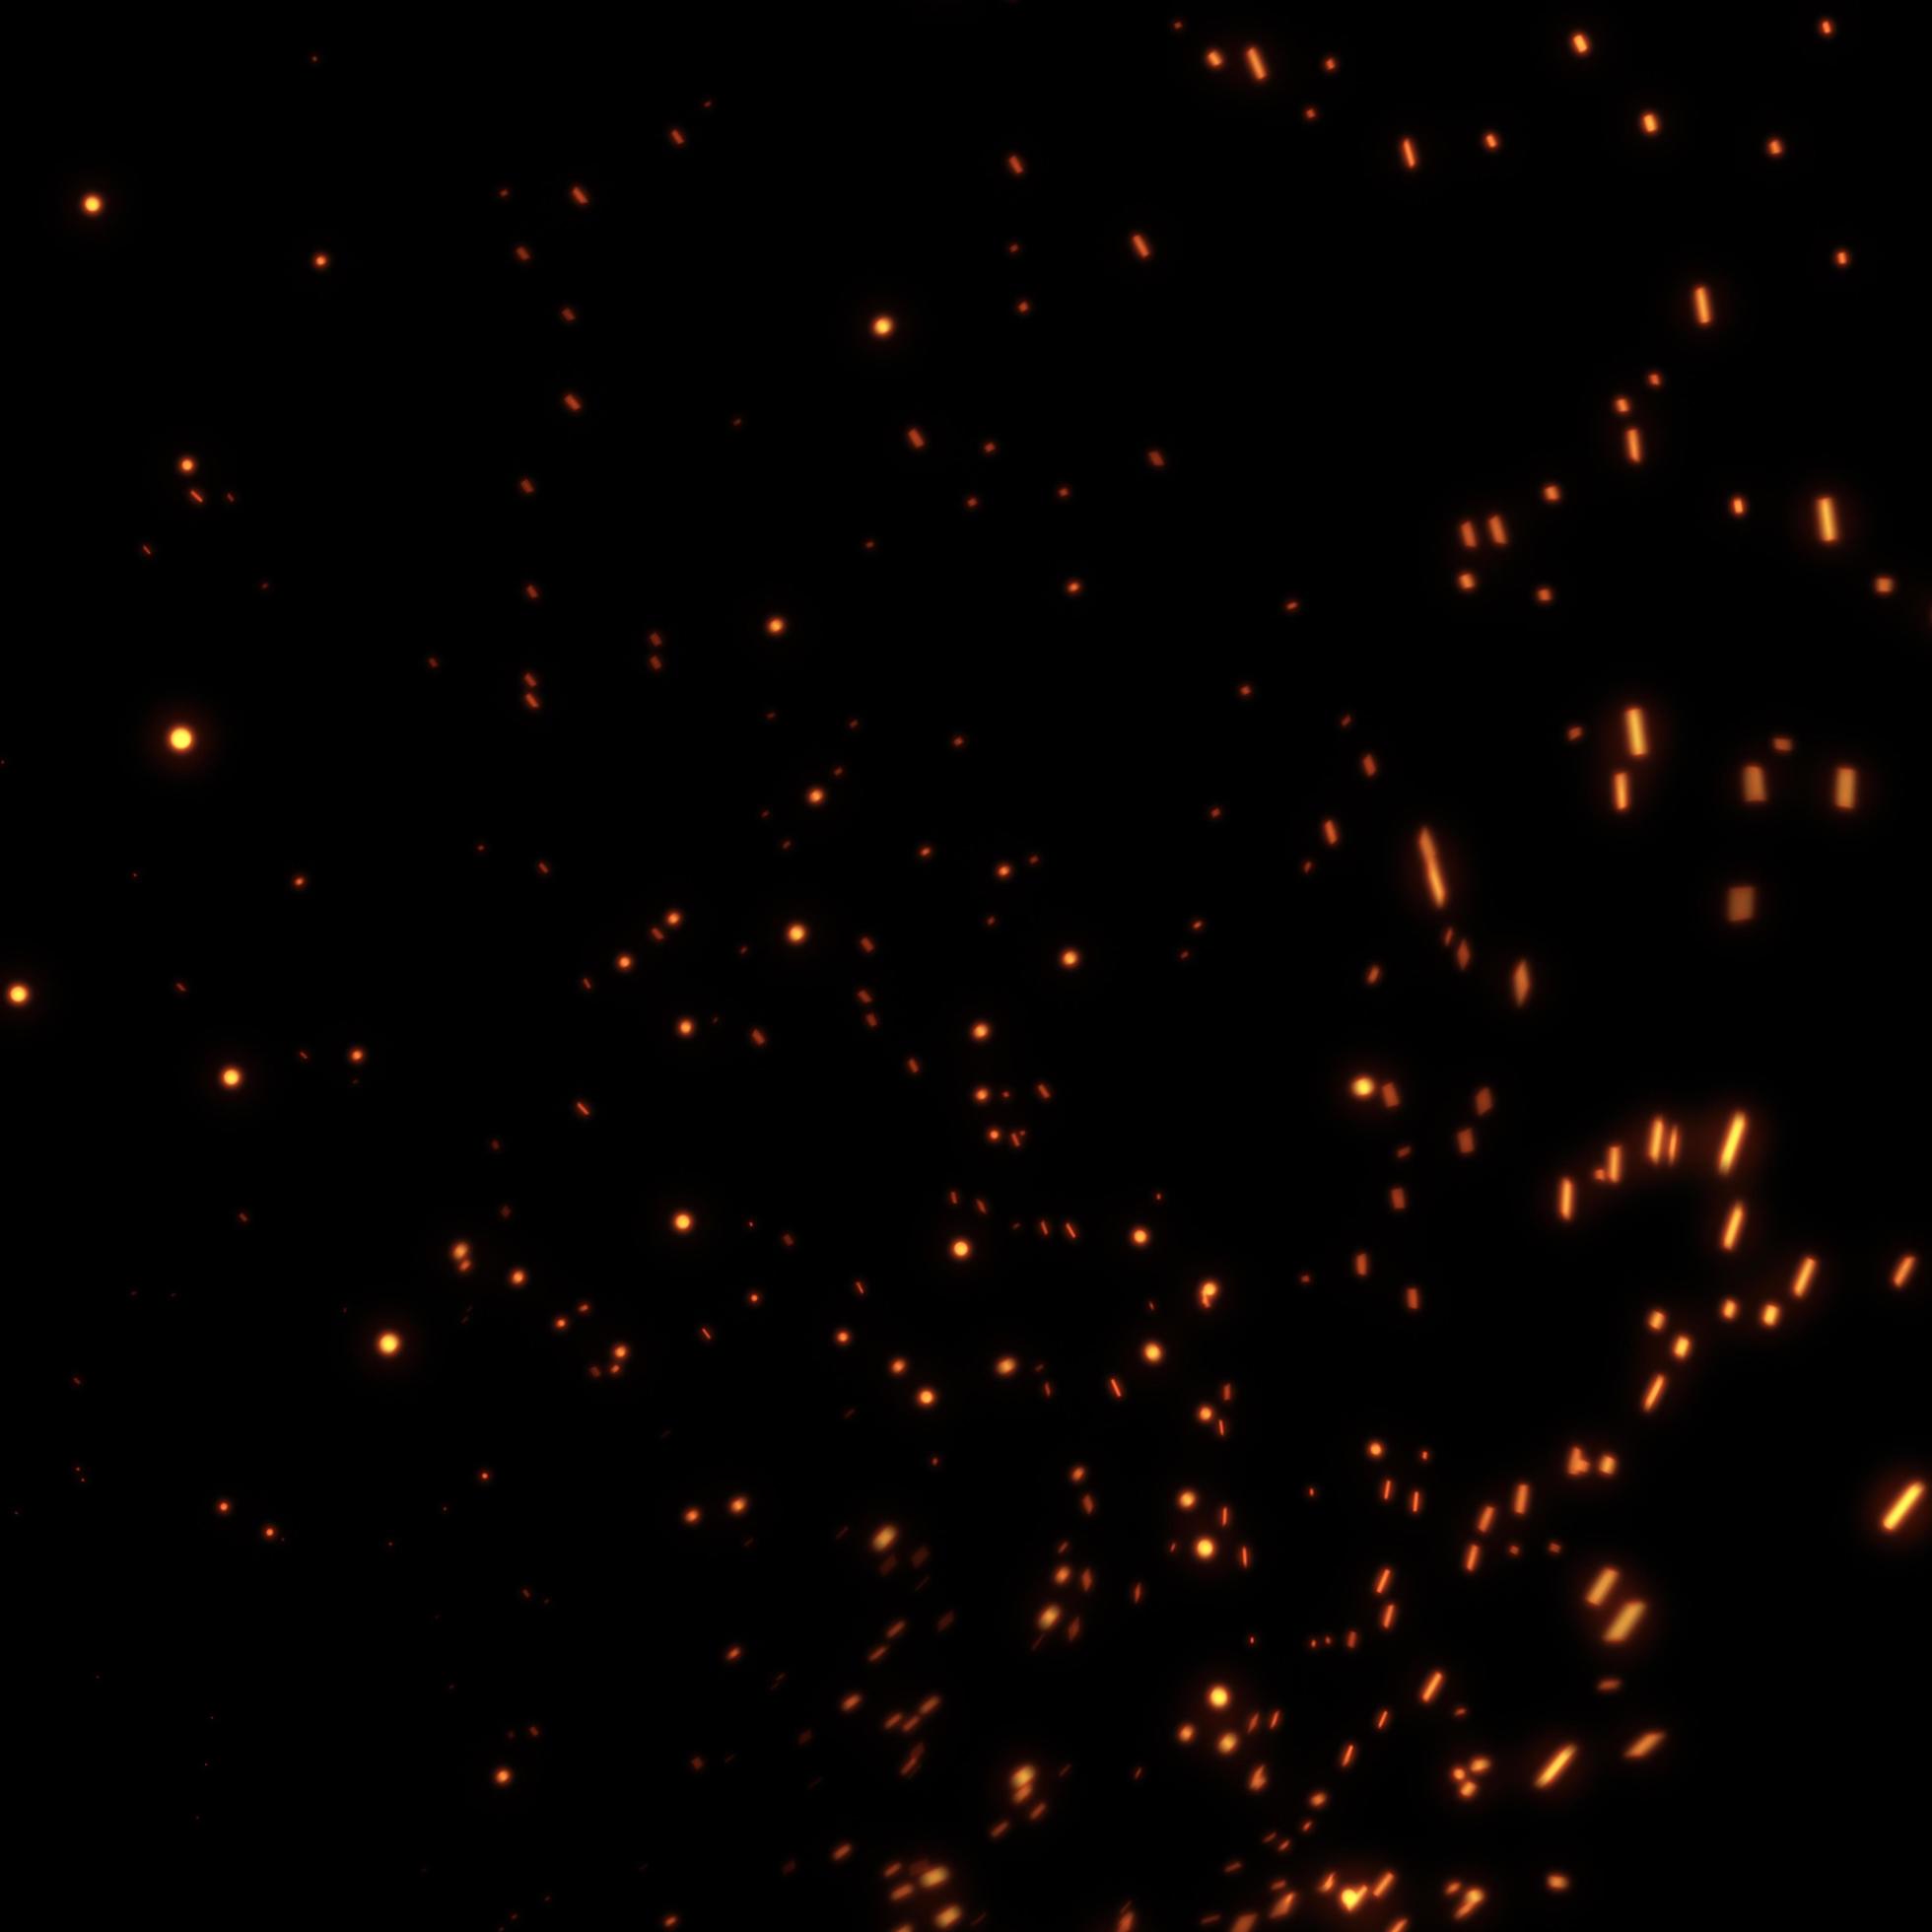 fundo de fogo preto, ilustração vetorial de fogo, queima de fogo 3555115  Vetor no Vecteezy